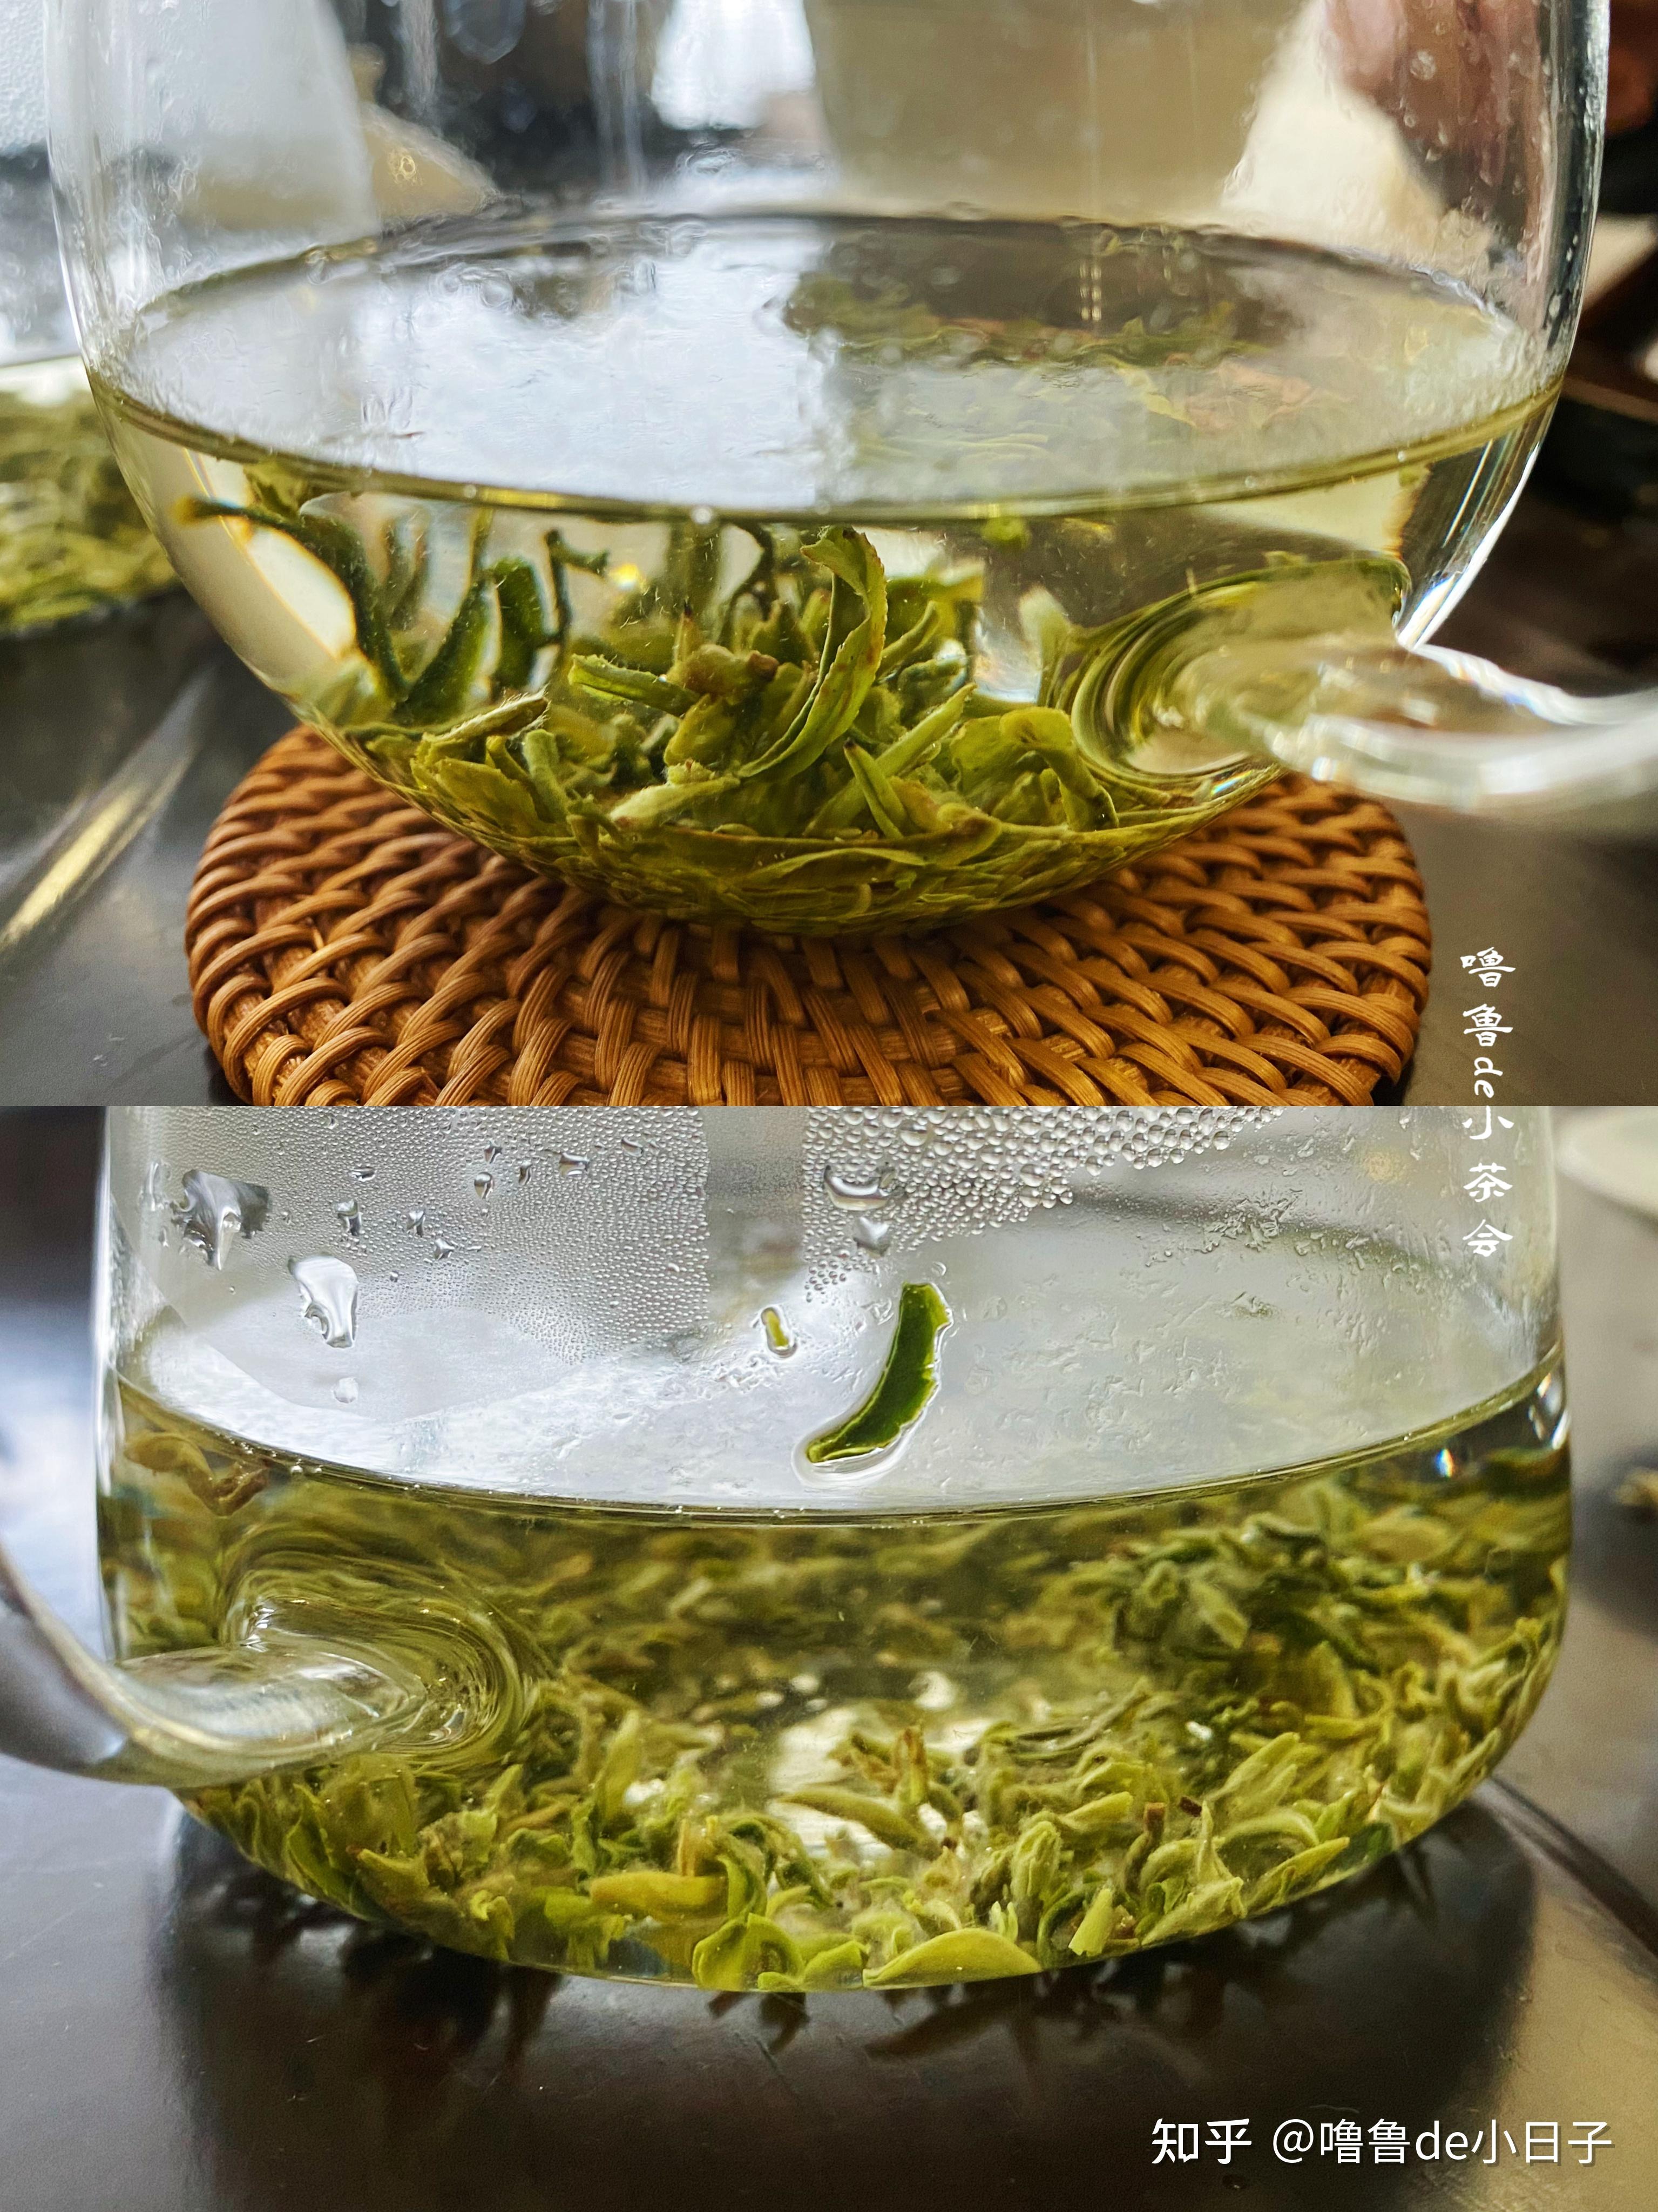 普洱生茶属于晒青绿茶,这个说法你认同吗? 